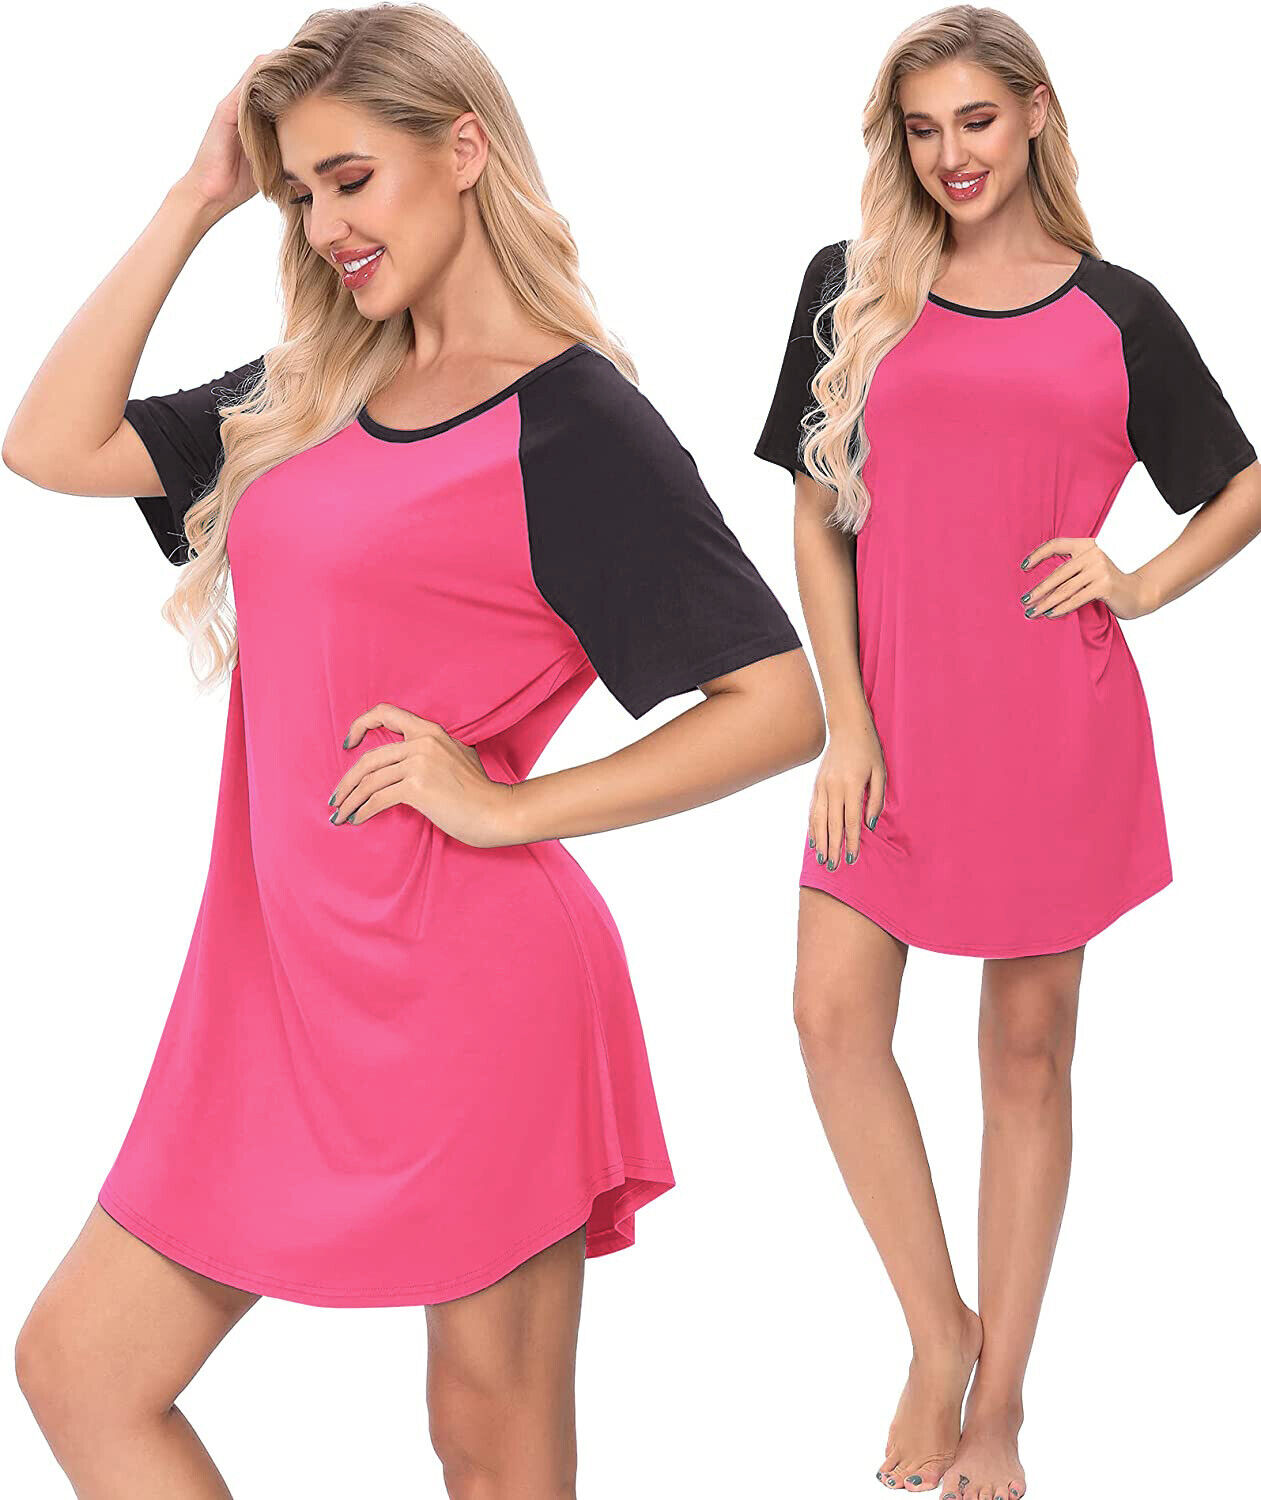 Womens Sleepwear Short Sleeve Cotton Sleep Shirts Tops Night Gown Sleepshirt  - AAA Polymer